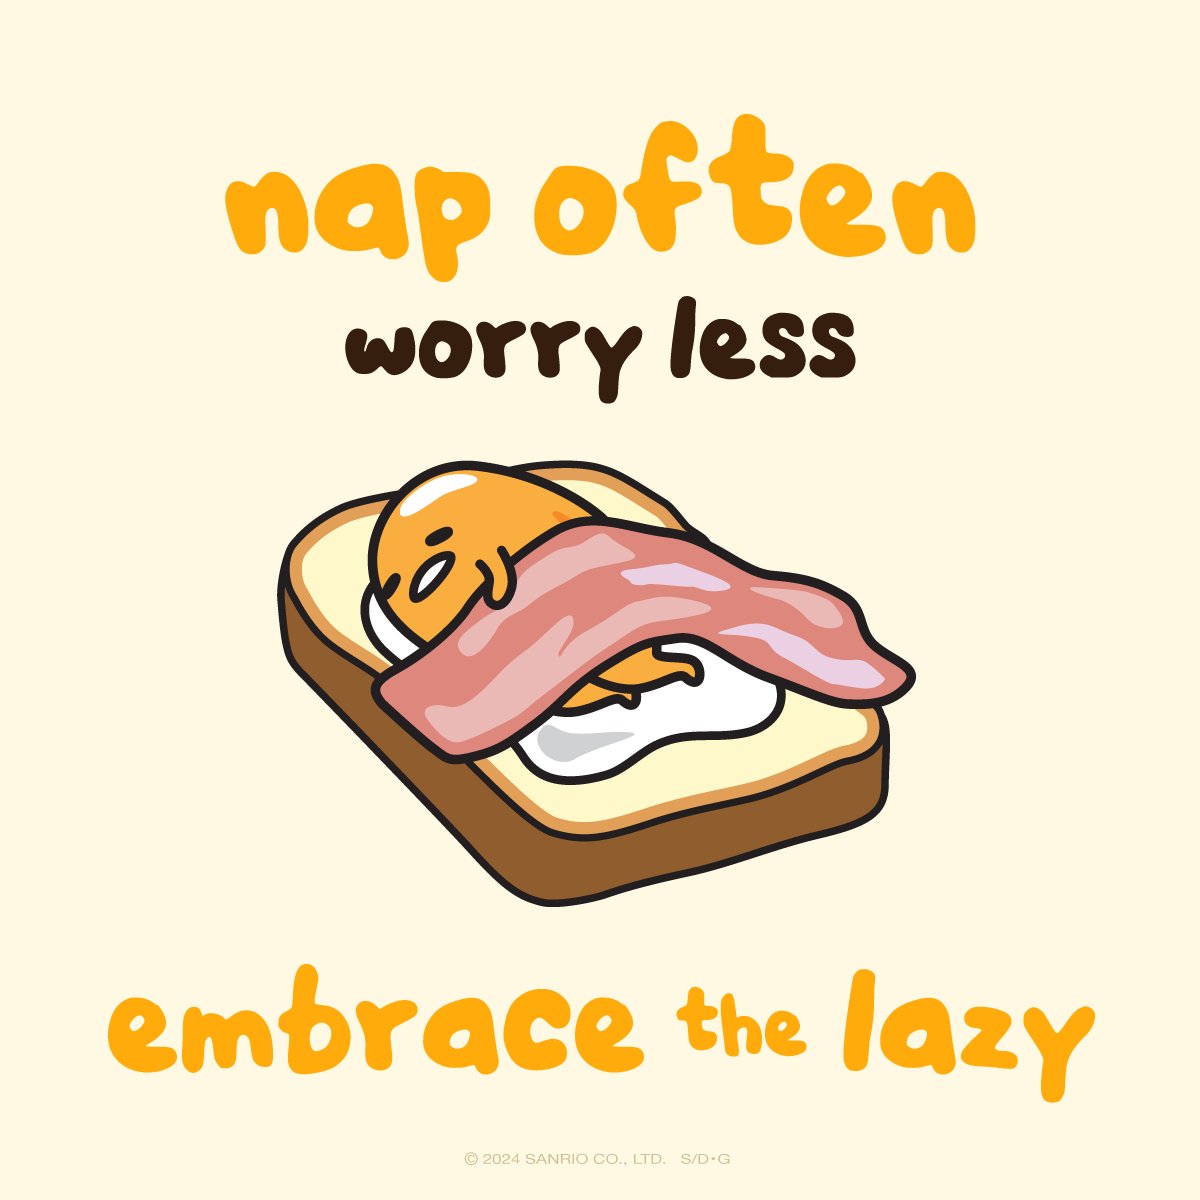 embrace the lazy… #mondaymotivation